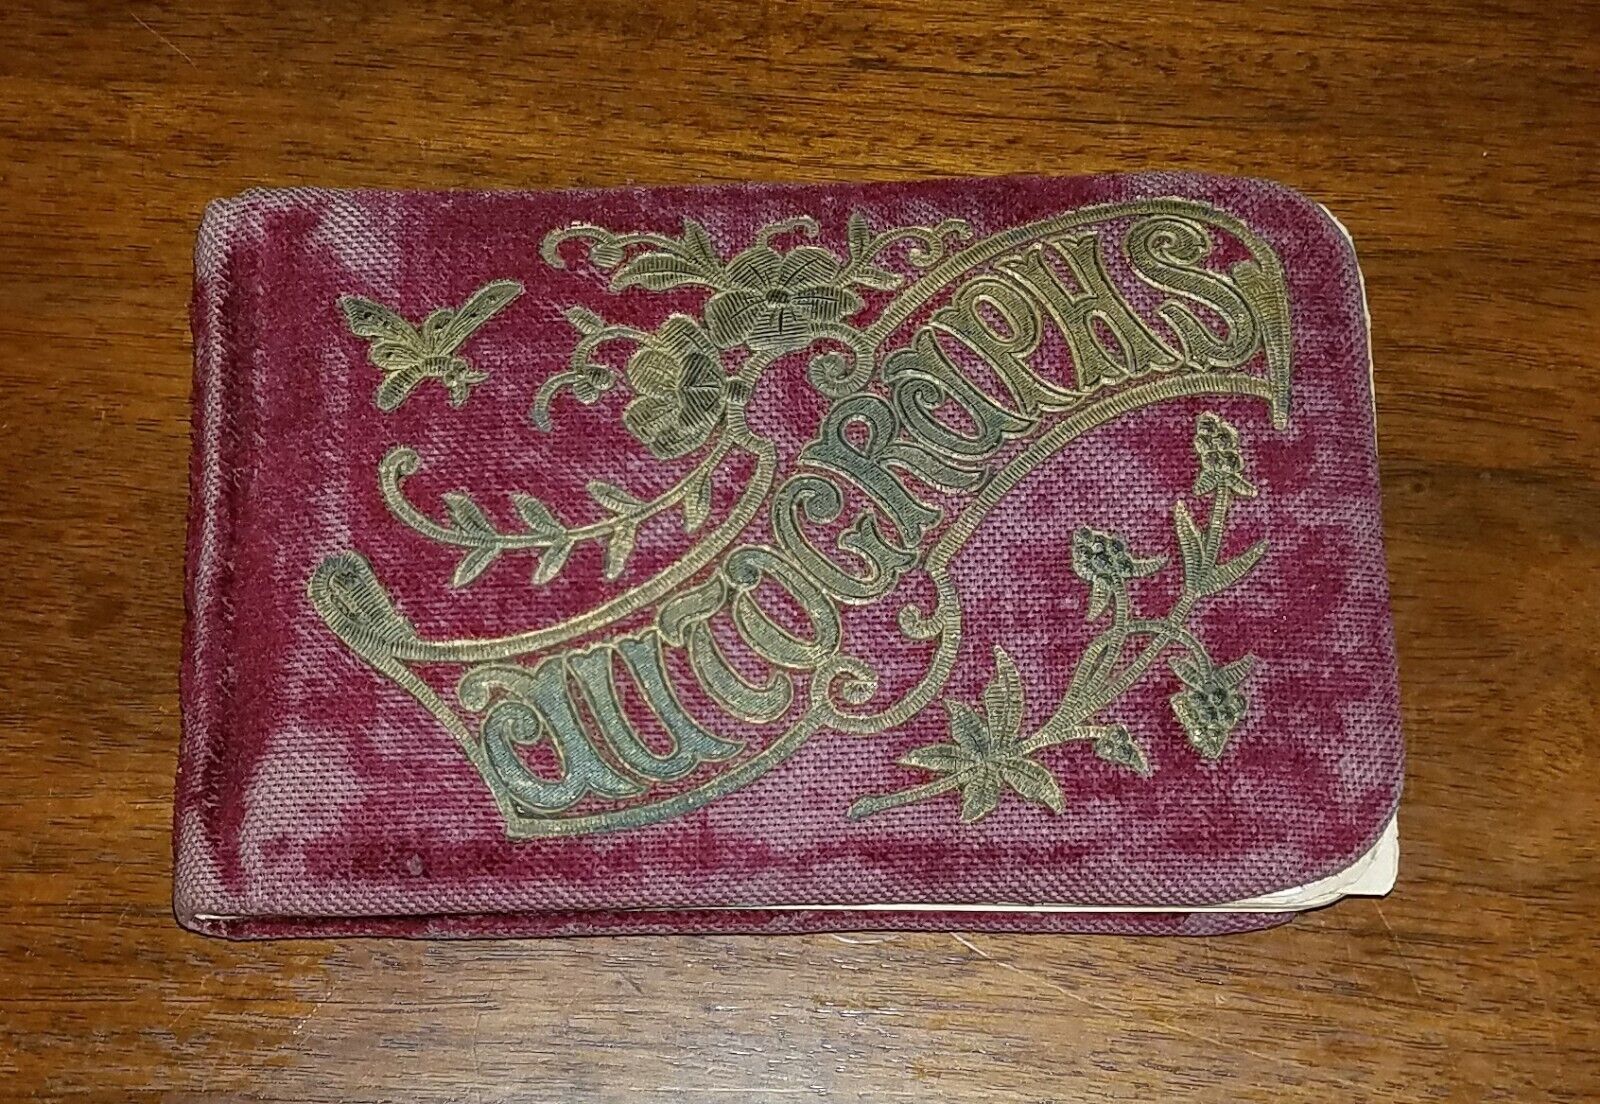 Antique 1890s Autographs Book. Dark Red Velvet Cover. Notes & Signatures. Paper